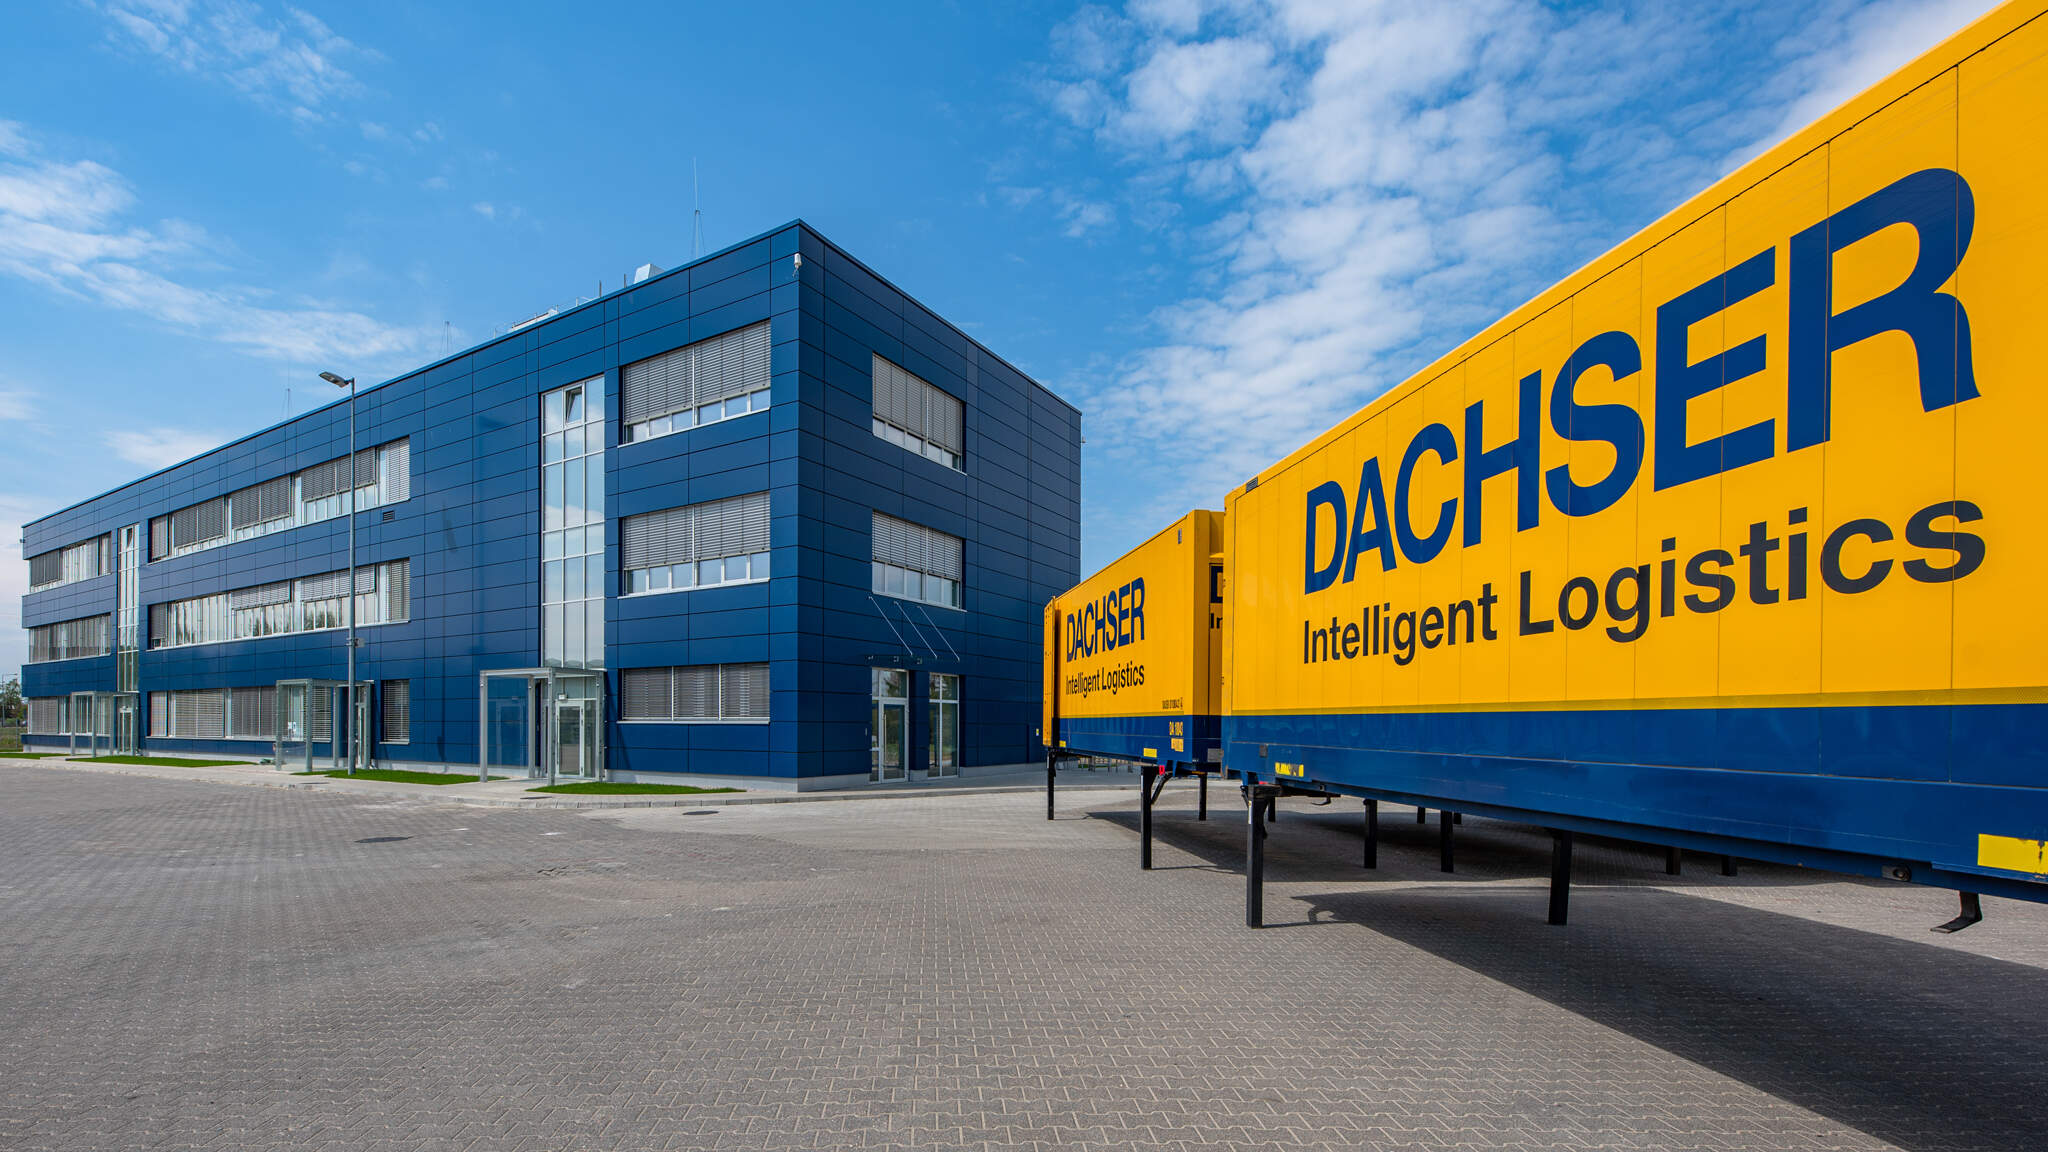 
DACHSER, rodzinna firma z siedzibą w Kempten w Niemczech, zapewnia logistykę transportu, magazynowanie i niestandardowe usługi w dwóch obszarach biznesowych: DACHSER Air & Sea Logistics oraz DACHSER Road Logistics.